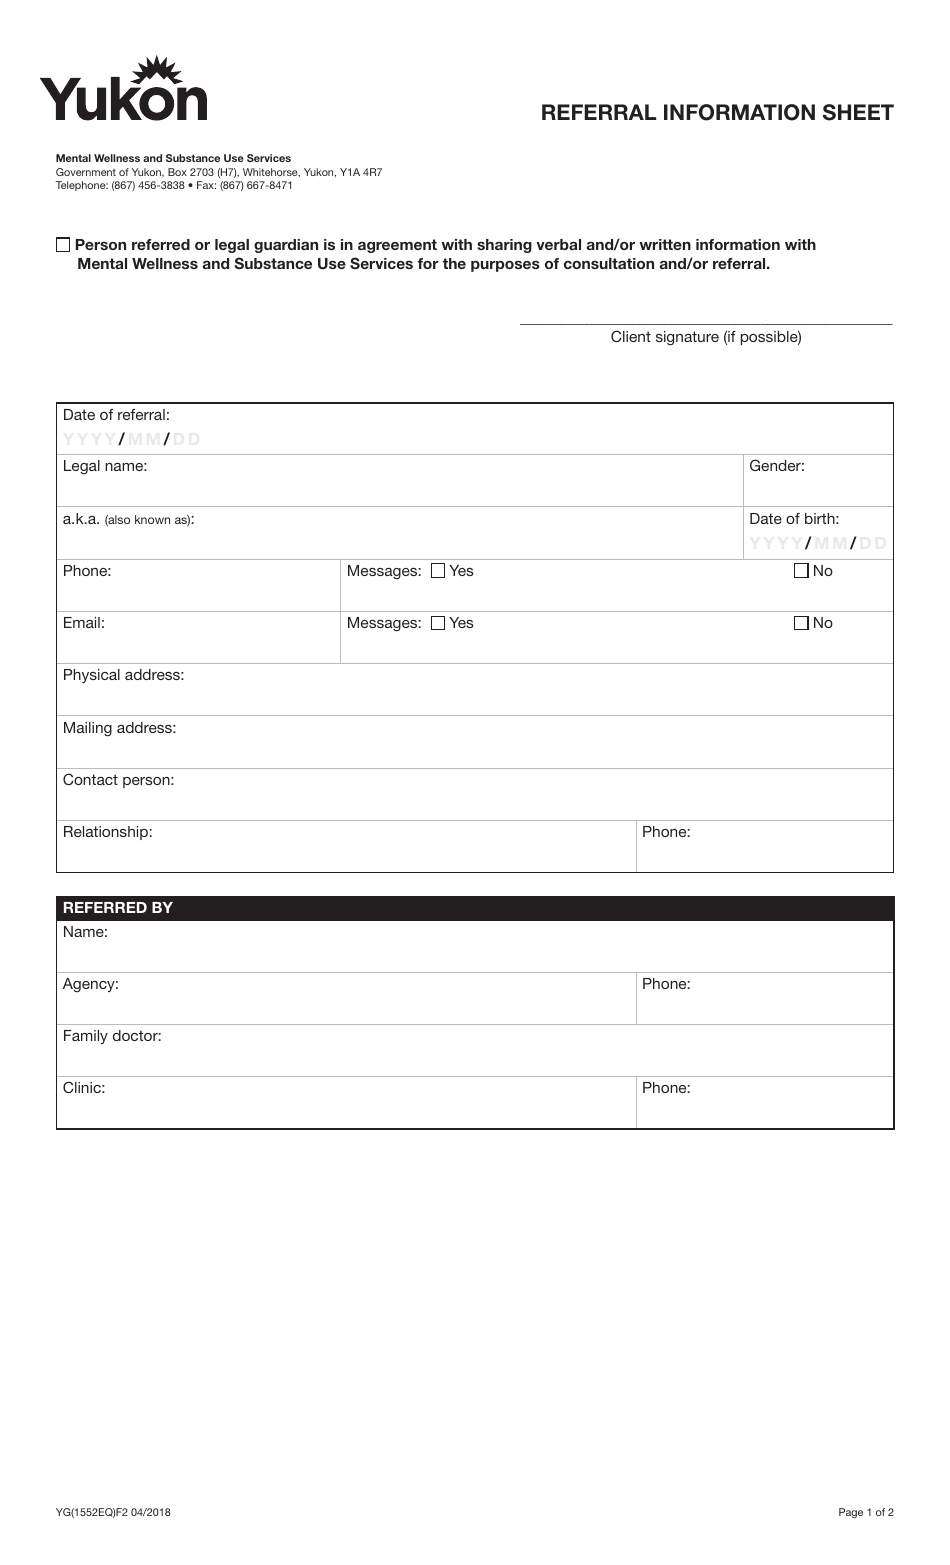 Form YG1552 Referral Information Sheet - Yukon, Canada, Page 1